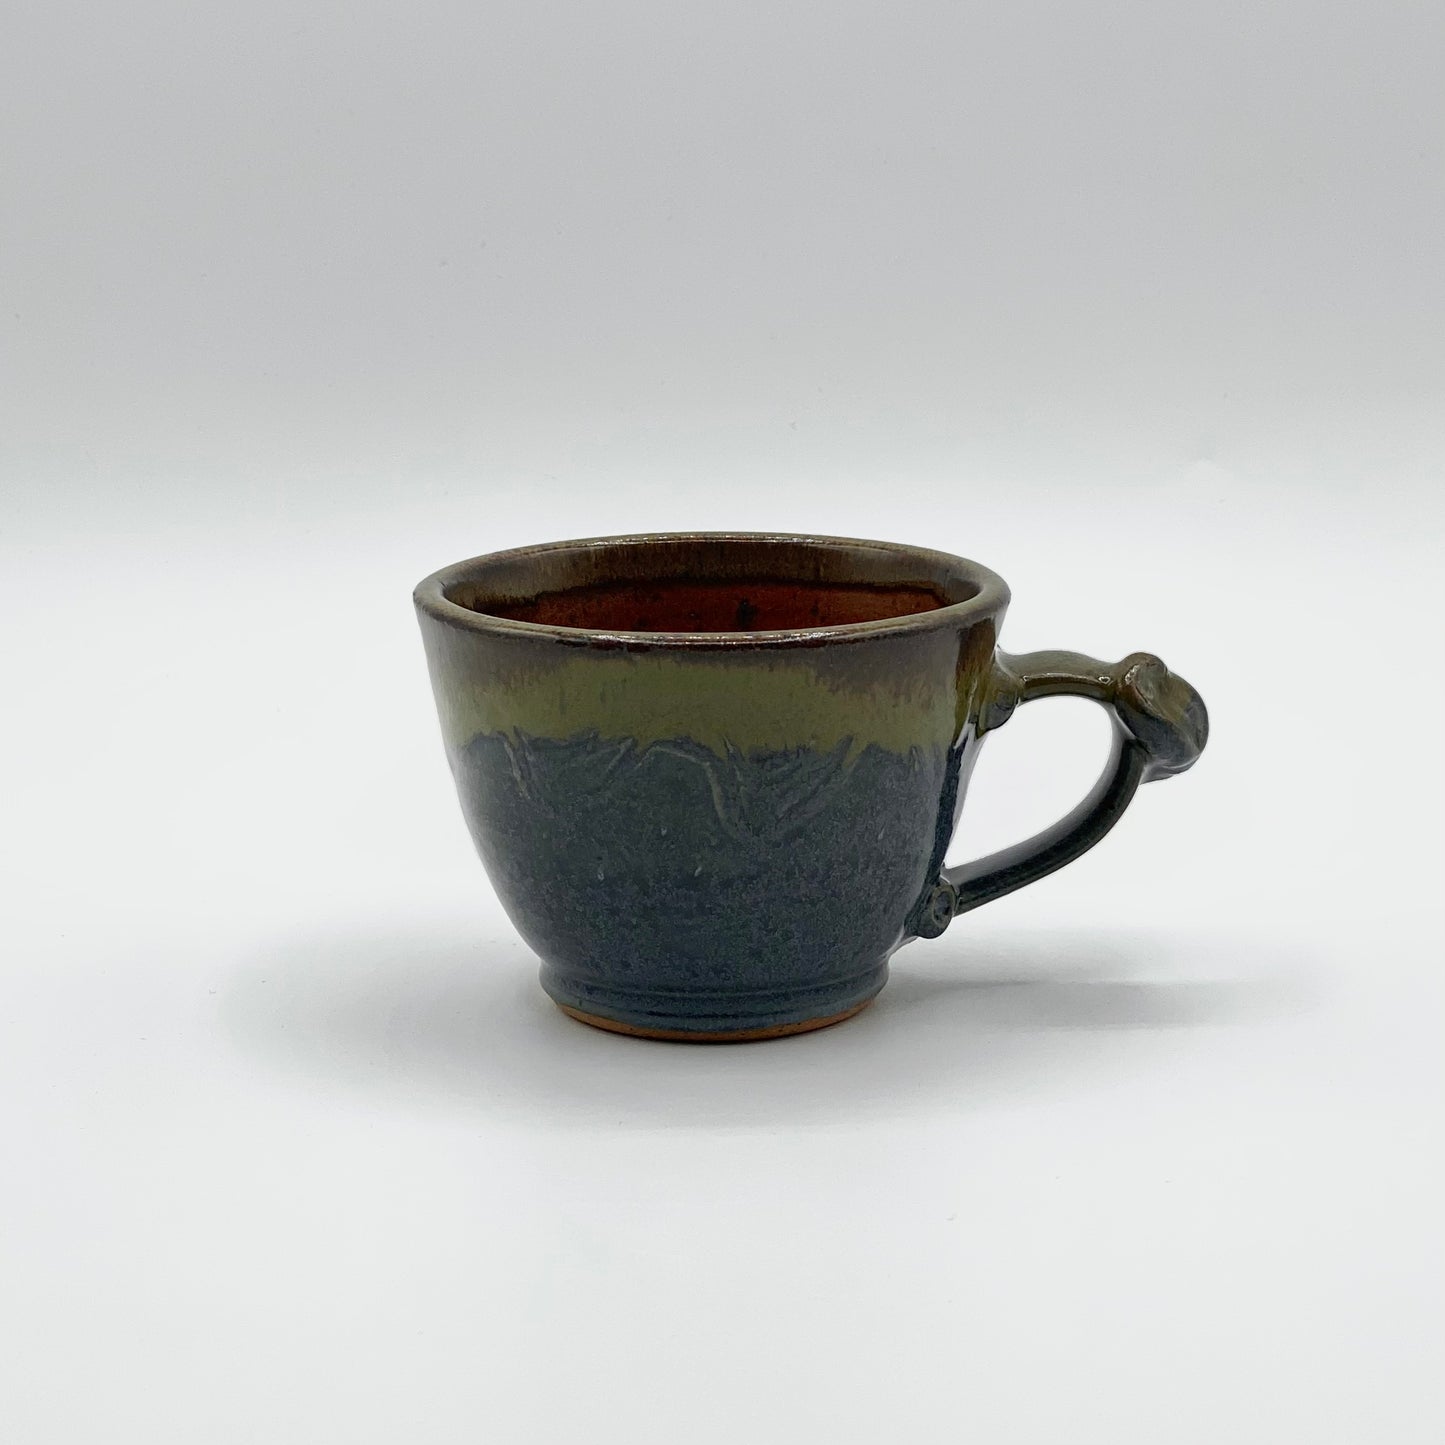 Cortado Cup by Barlicoco Pottery